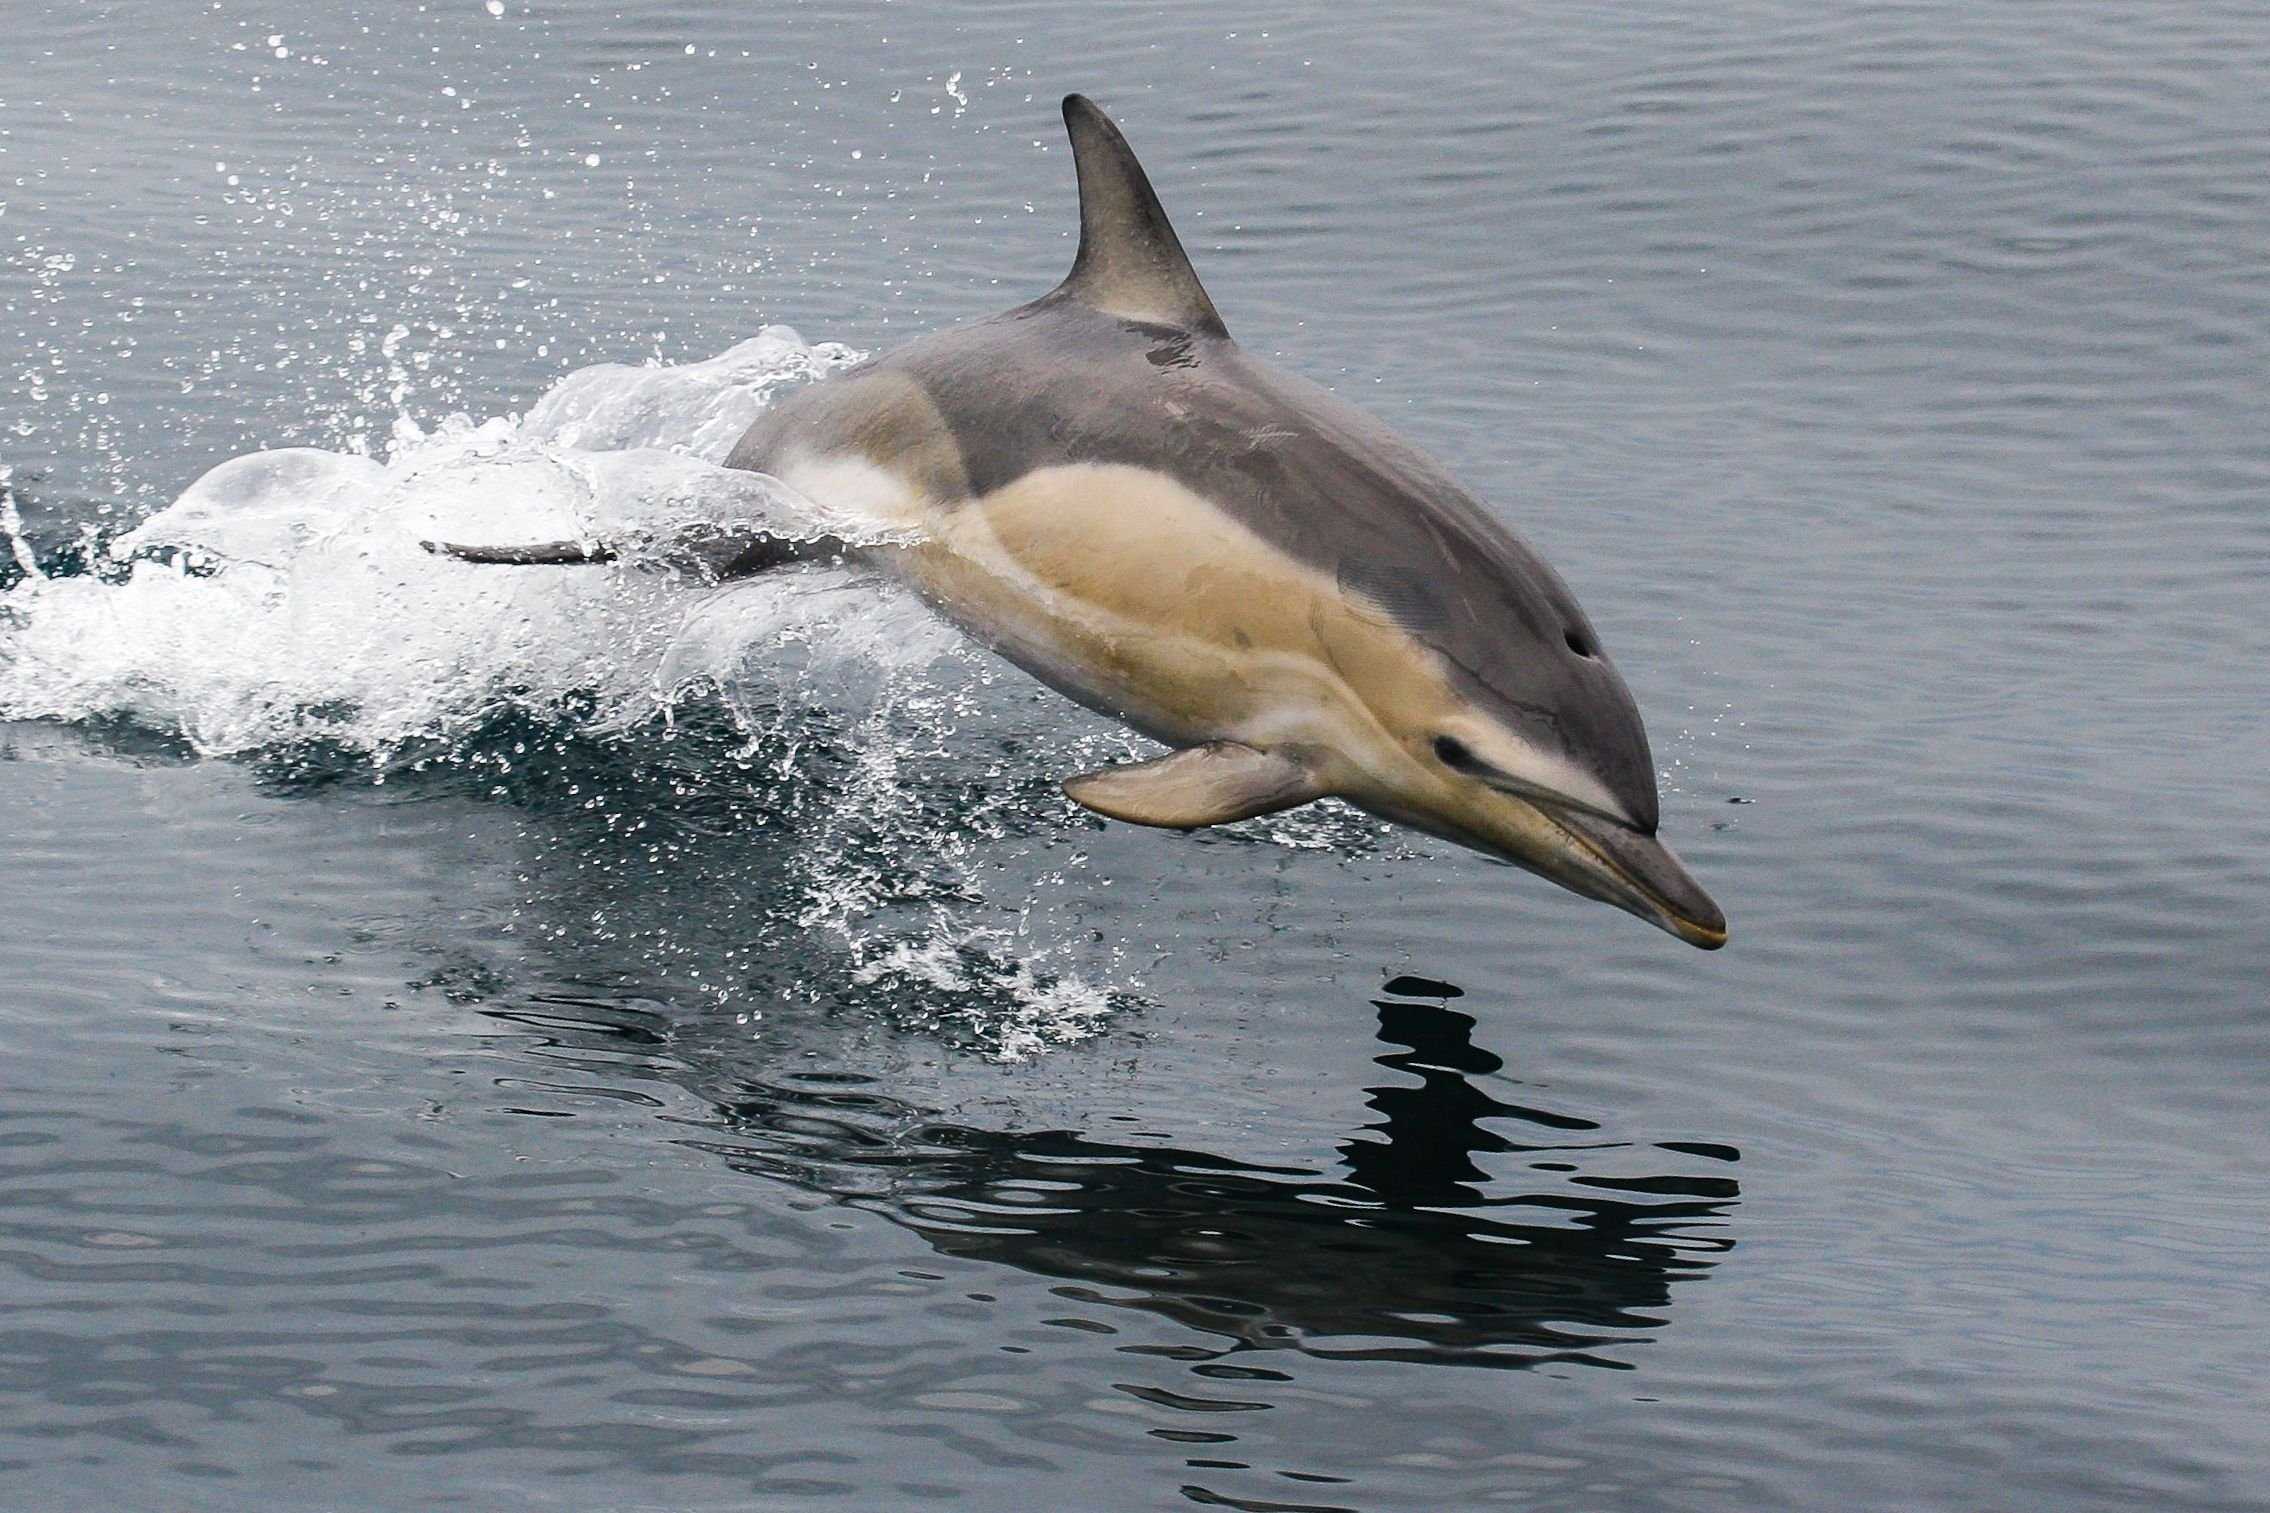 Короткоклювый обыкновенный дельфин или дельфин-белобочка. обыкновенный дельфин, или дельфин белобочка (delphinus delphis)eng. short-beaked common dolphin систематическое положение дельфина белобочки